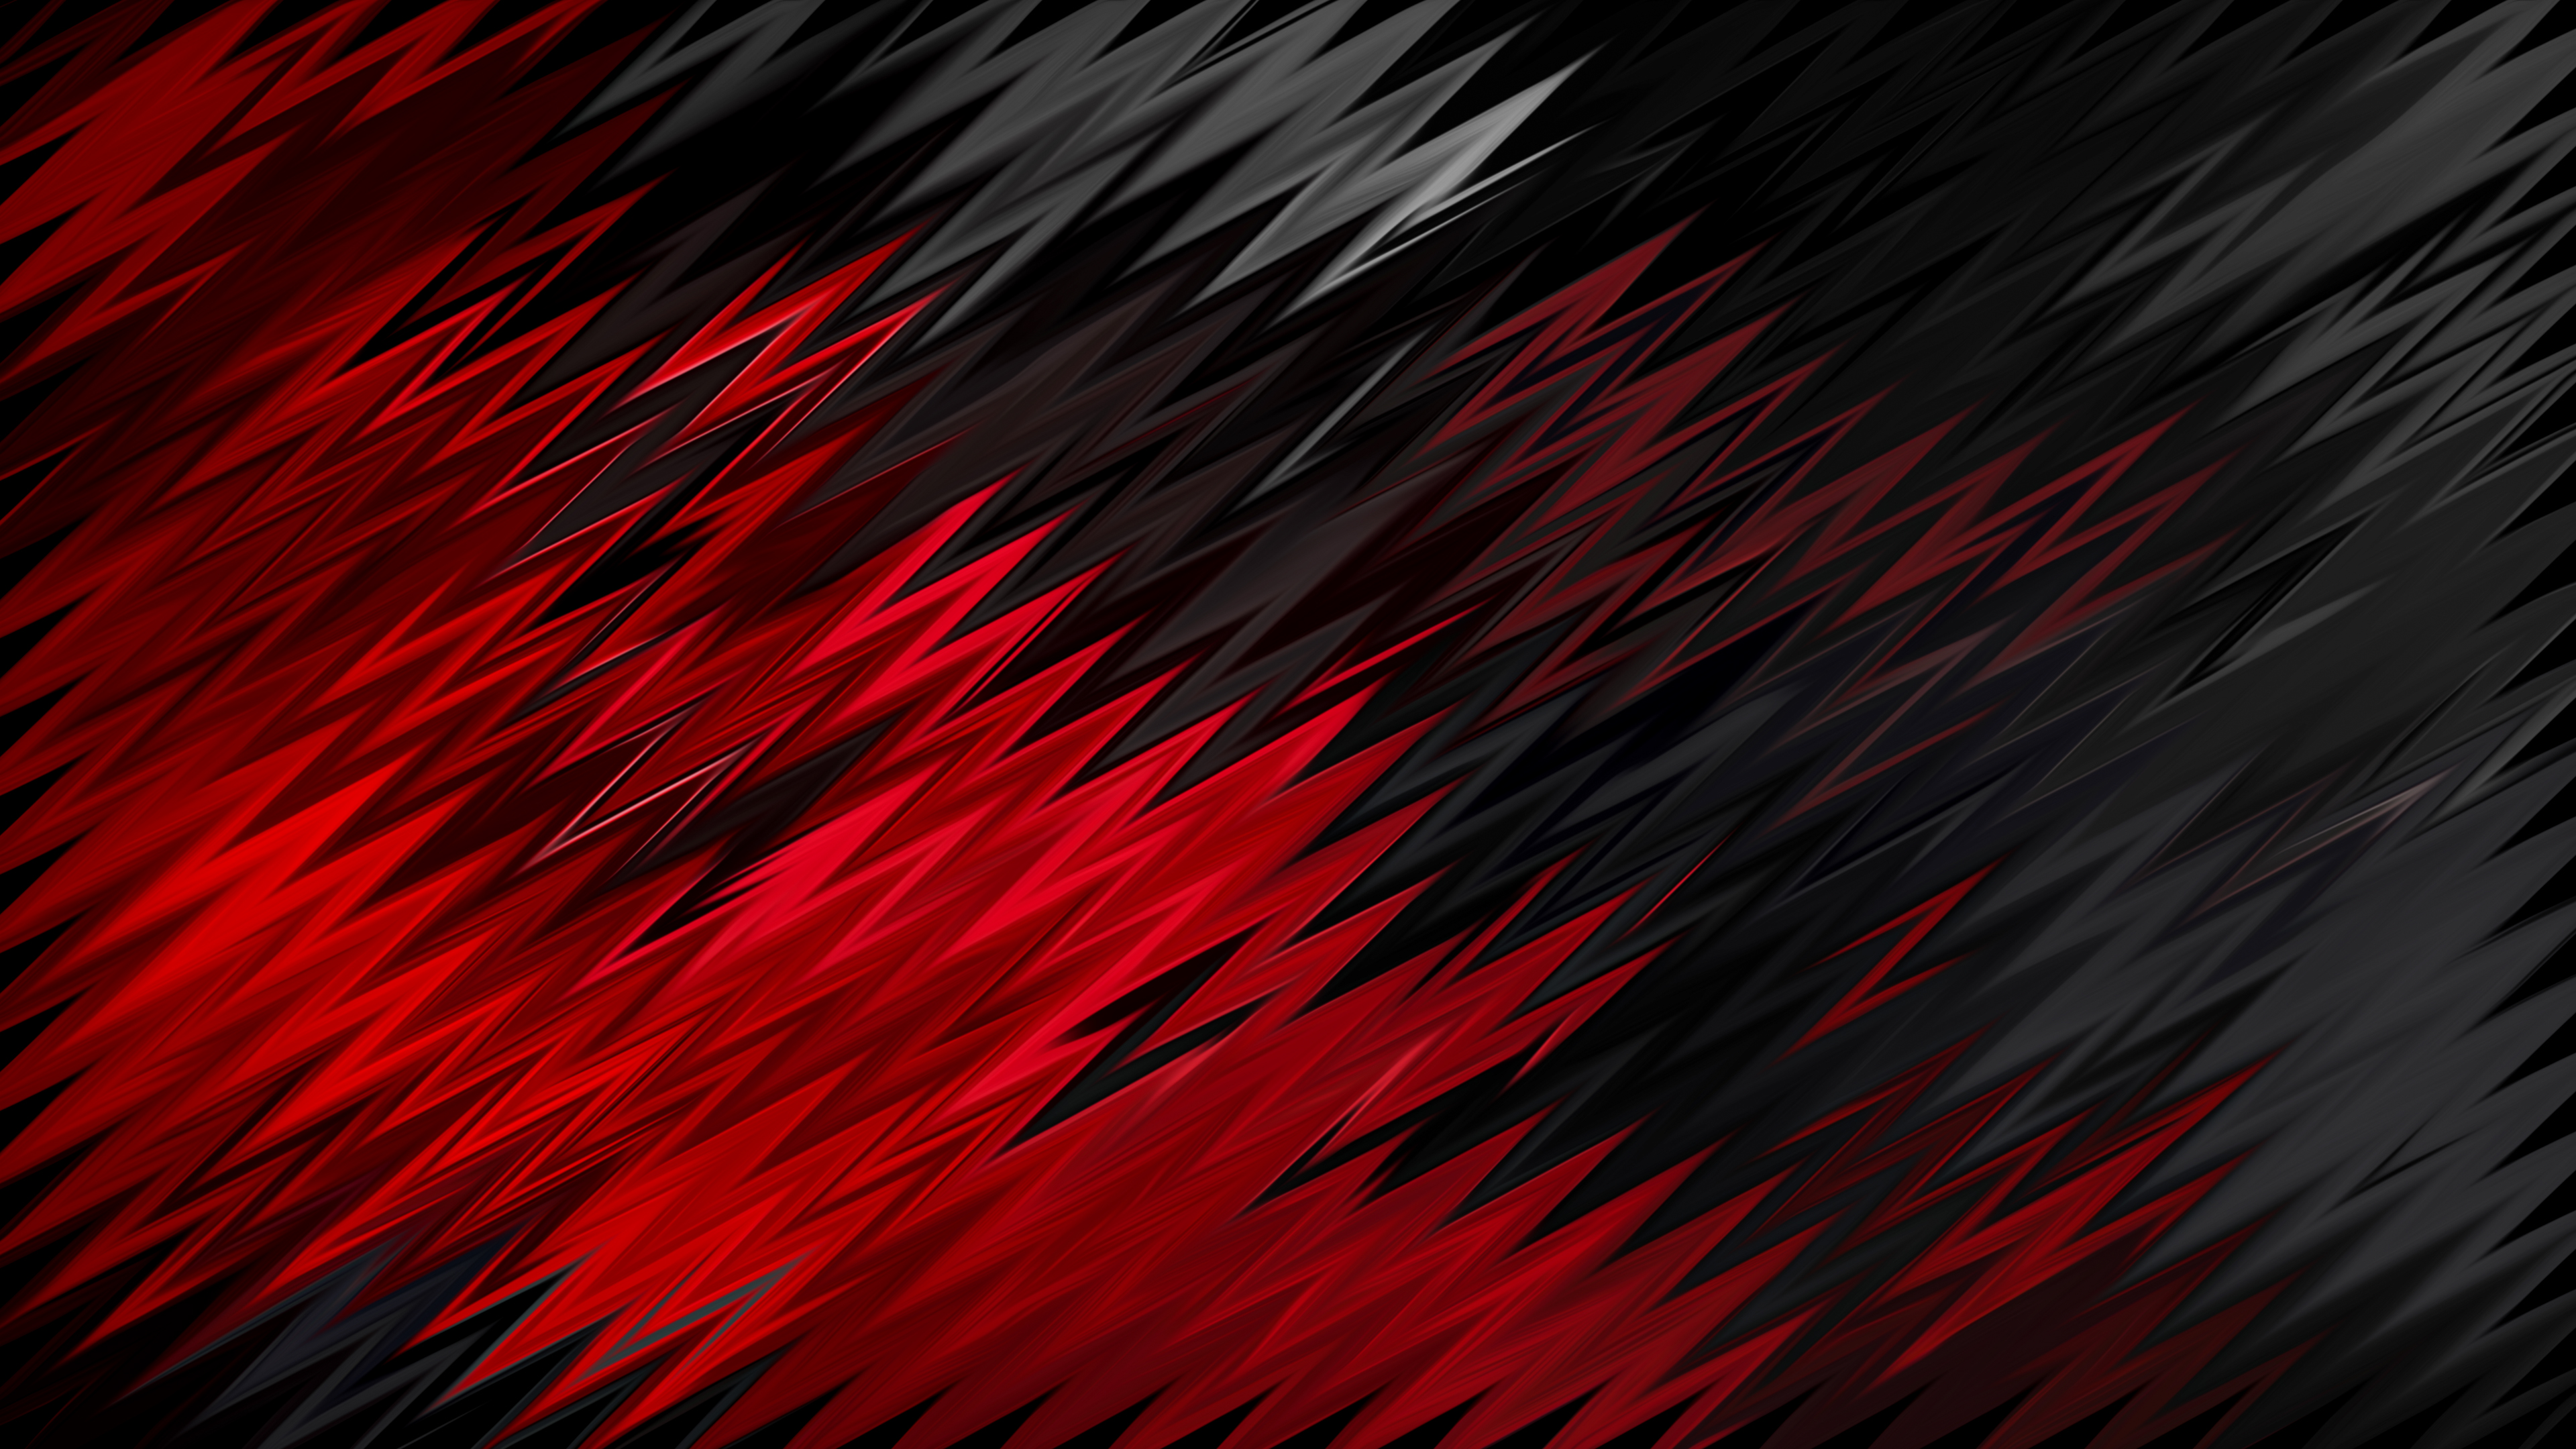 Hình nền độ phân giải cao đỏ đen sẽ cho bạn những hình ảnh sắc nét và rõ ràng nhất. Xem hình nền này để trải nghiệm chất lượng hình ảnh cao cấp.